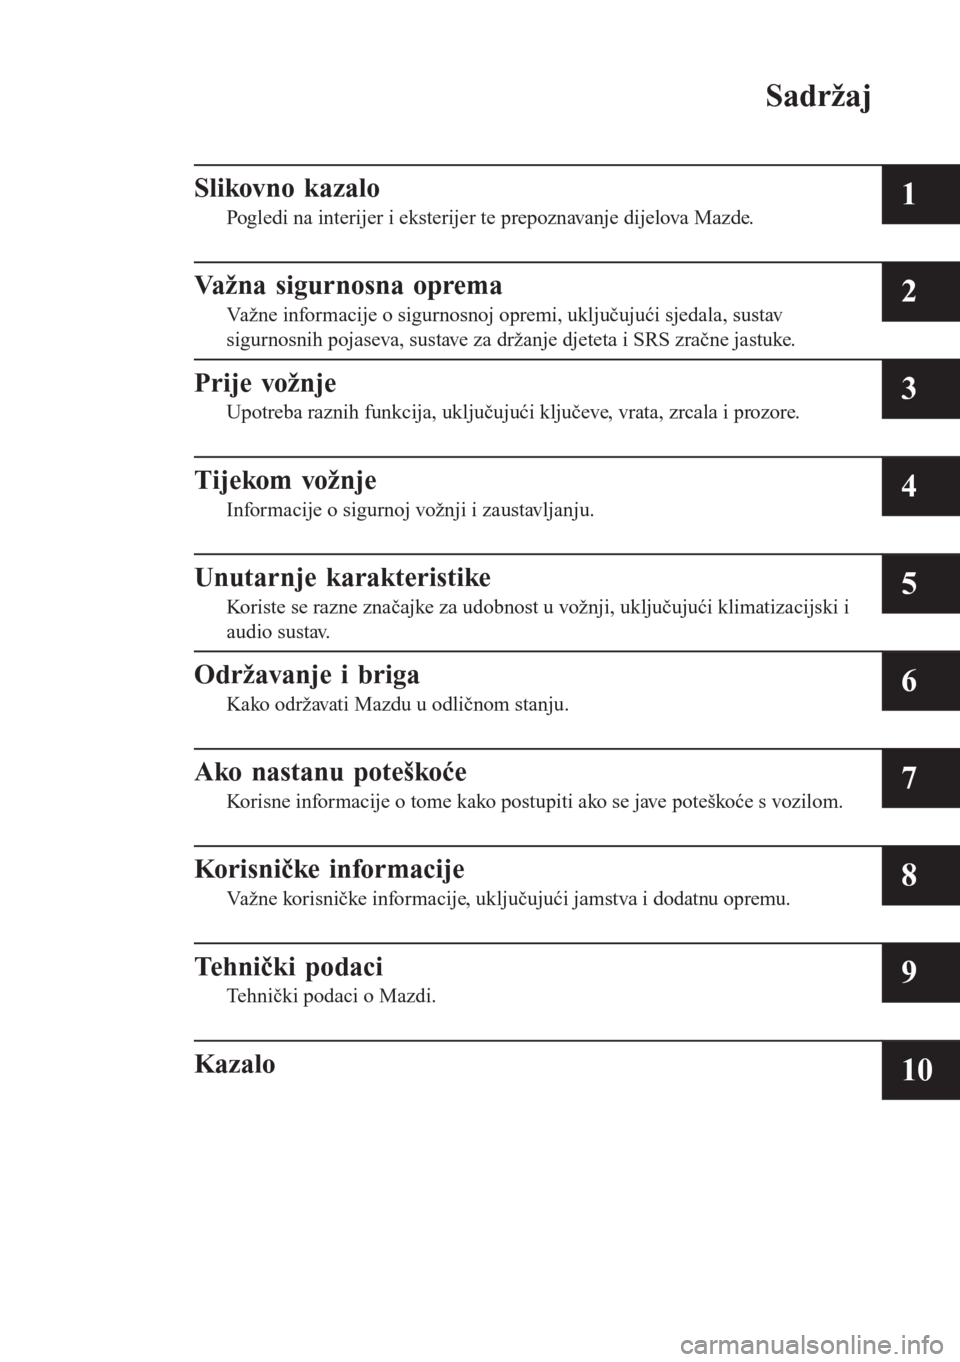 MAZDA MODEL CX-3 2016  Upute za uporabu (in Croatian) Sadržaj
Slikovno kazalo
Pogledi na interijer i eksterijer te prepoznavanje dijelova Mazde.1
Važna sigurnosna oprema
Važne informacije o sigurnosnoj opremi, uključujući sjedala, sustav
sigurnosnih